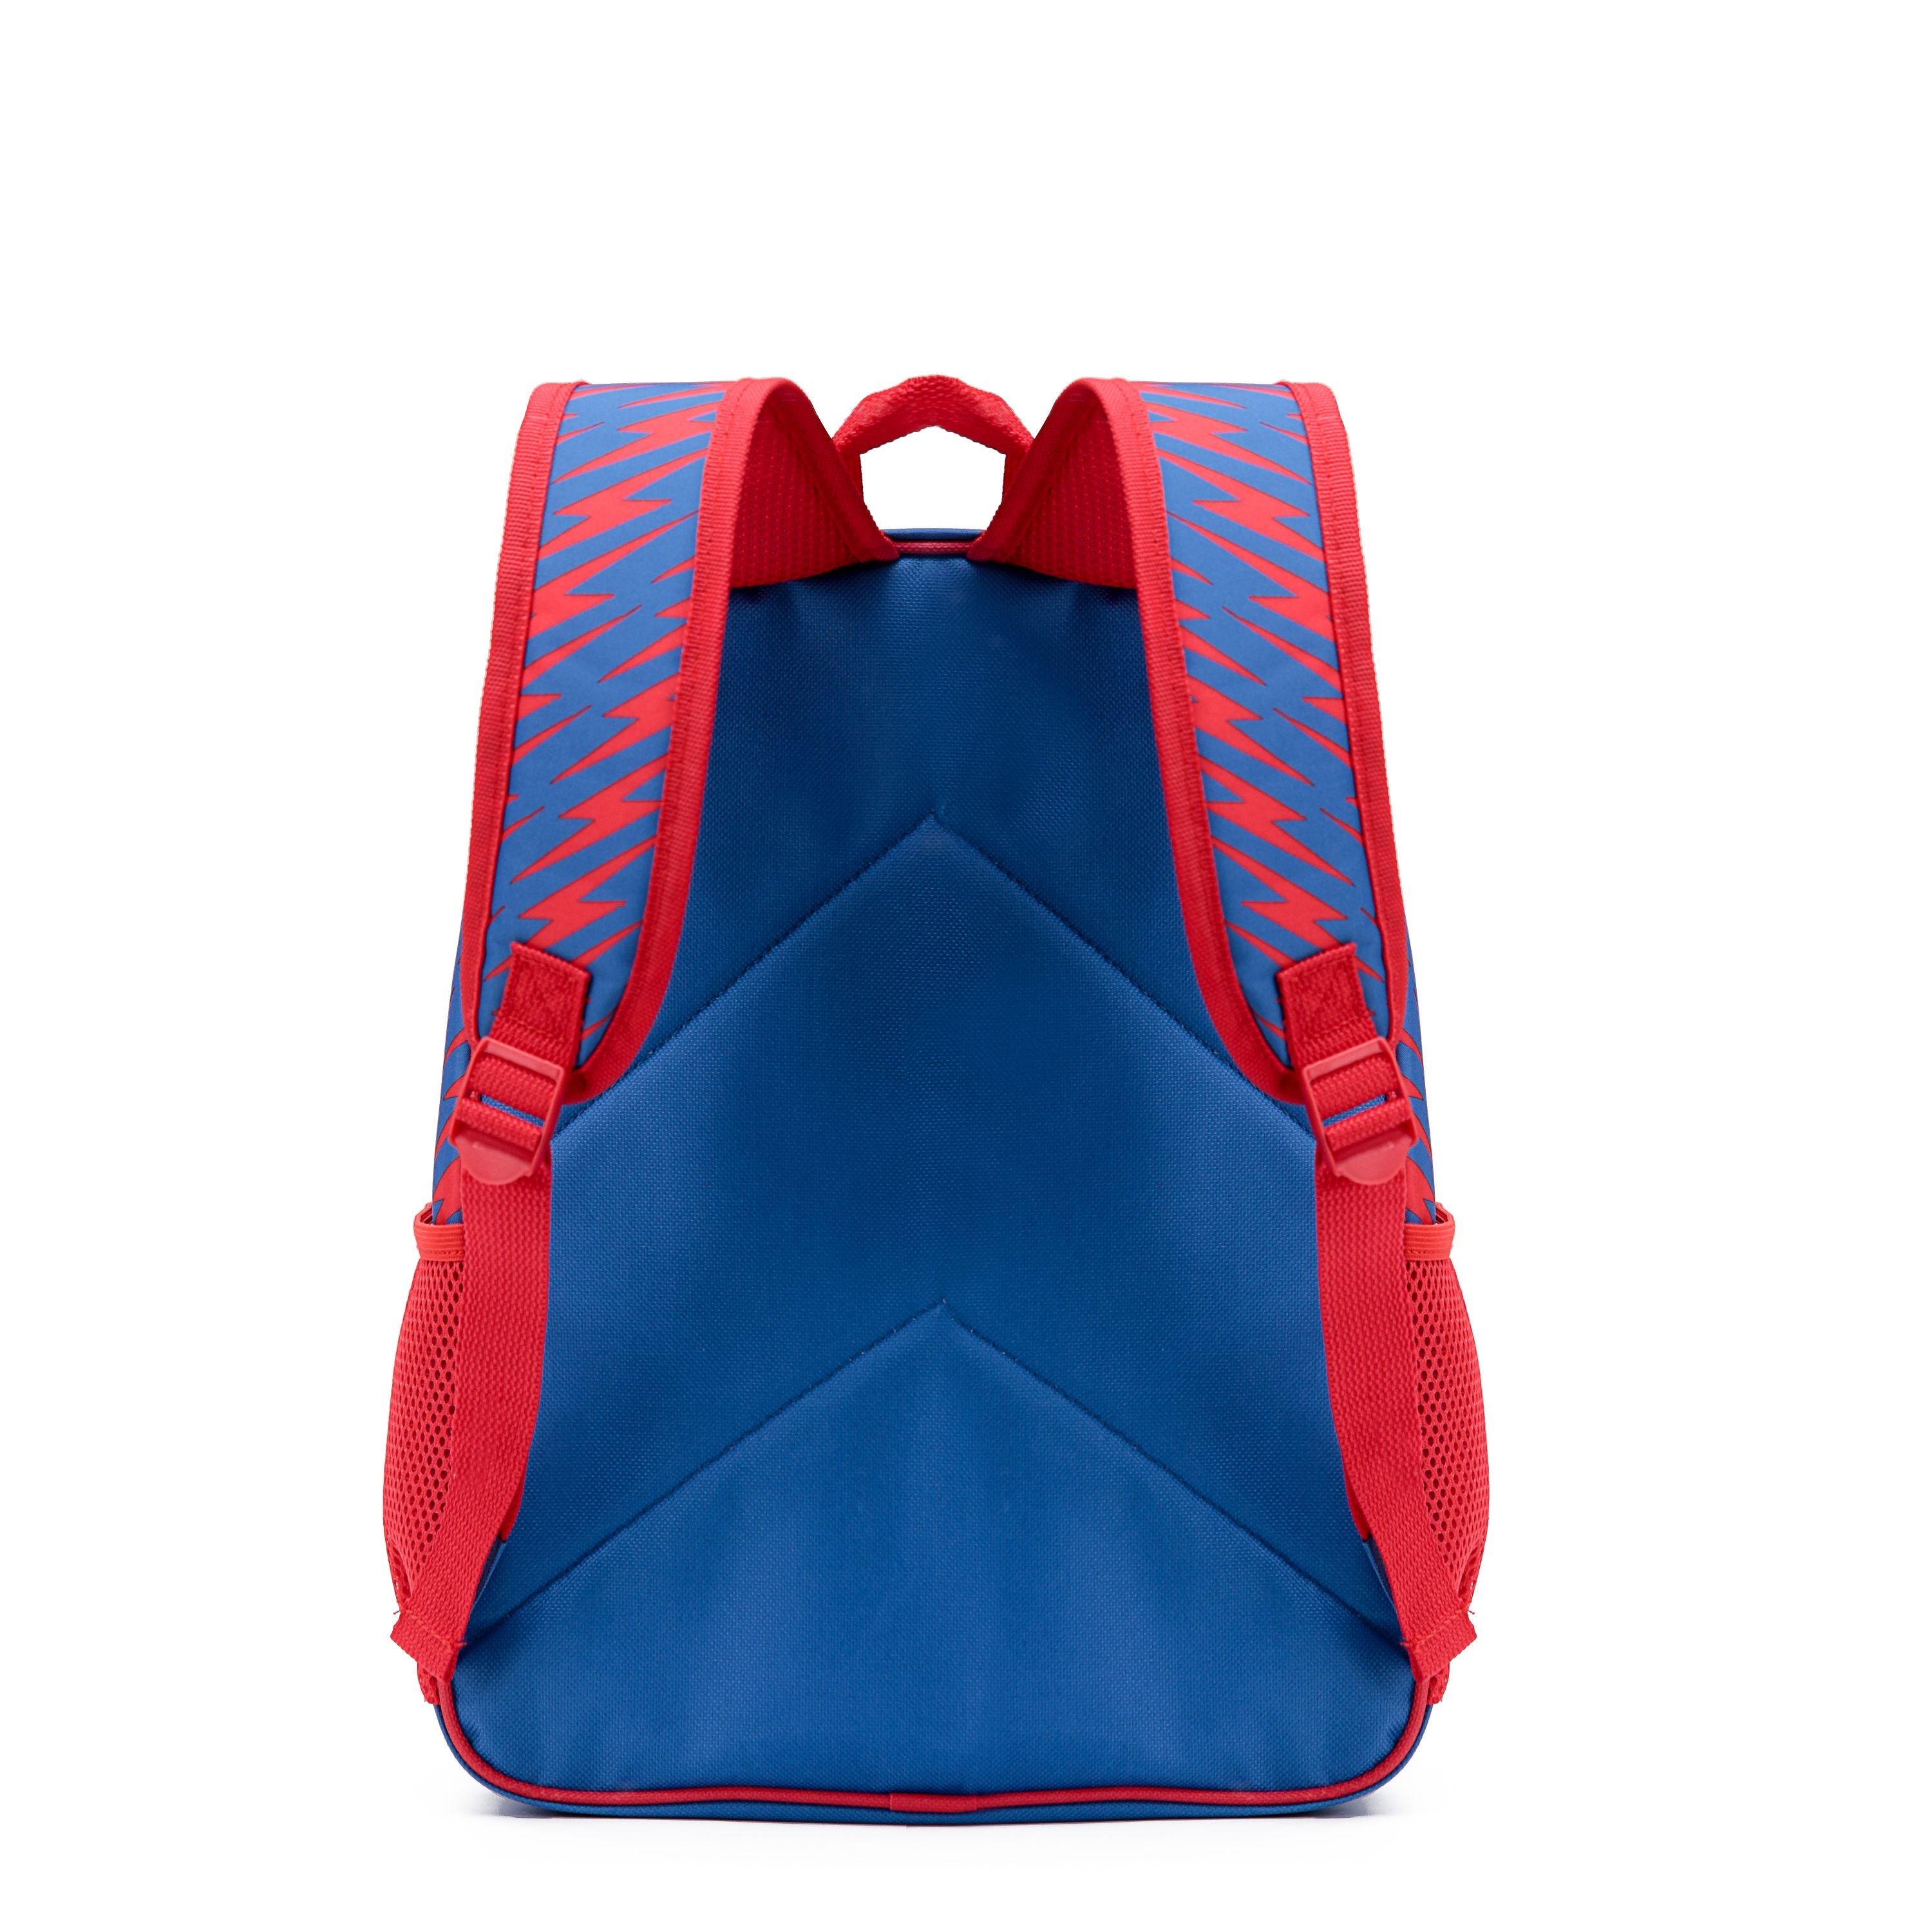 Marvel - Spider Man Mar093 15in Hologram Backpack - Red/Blue